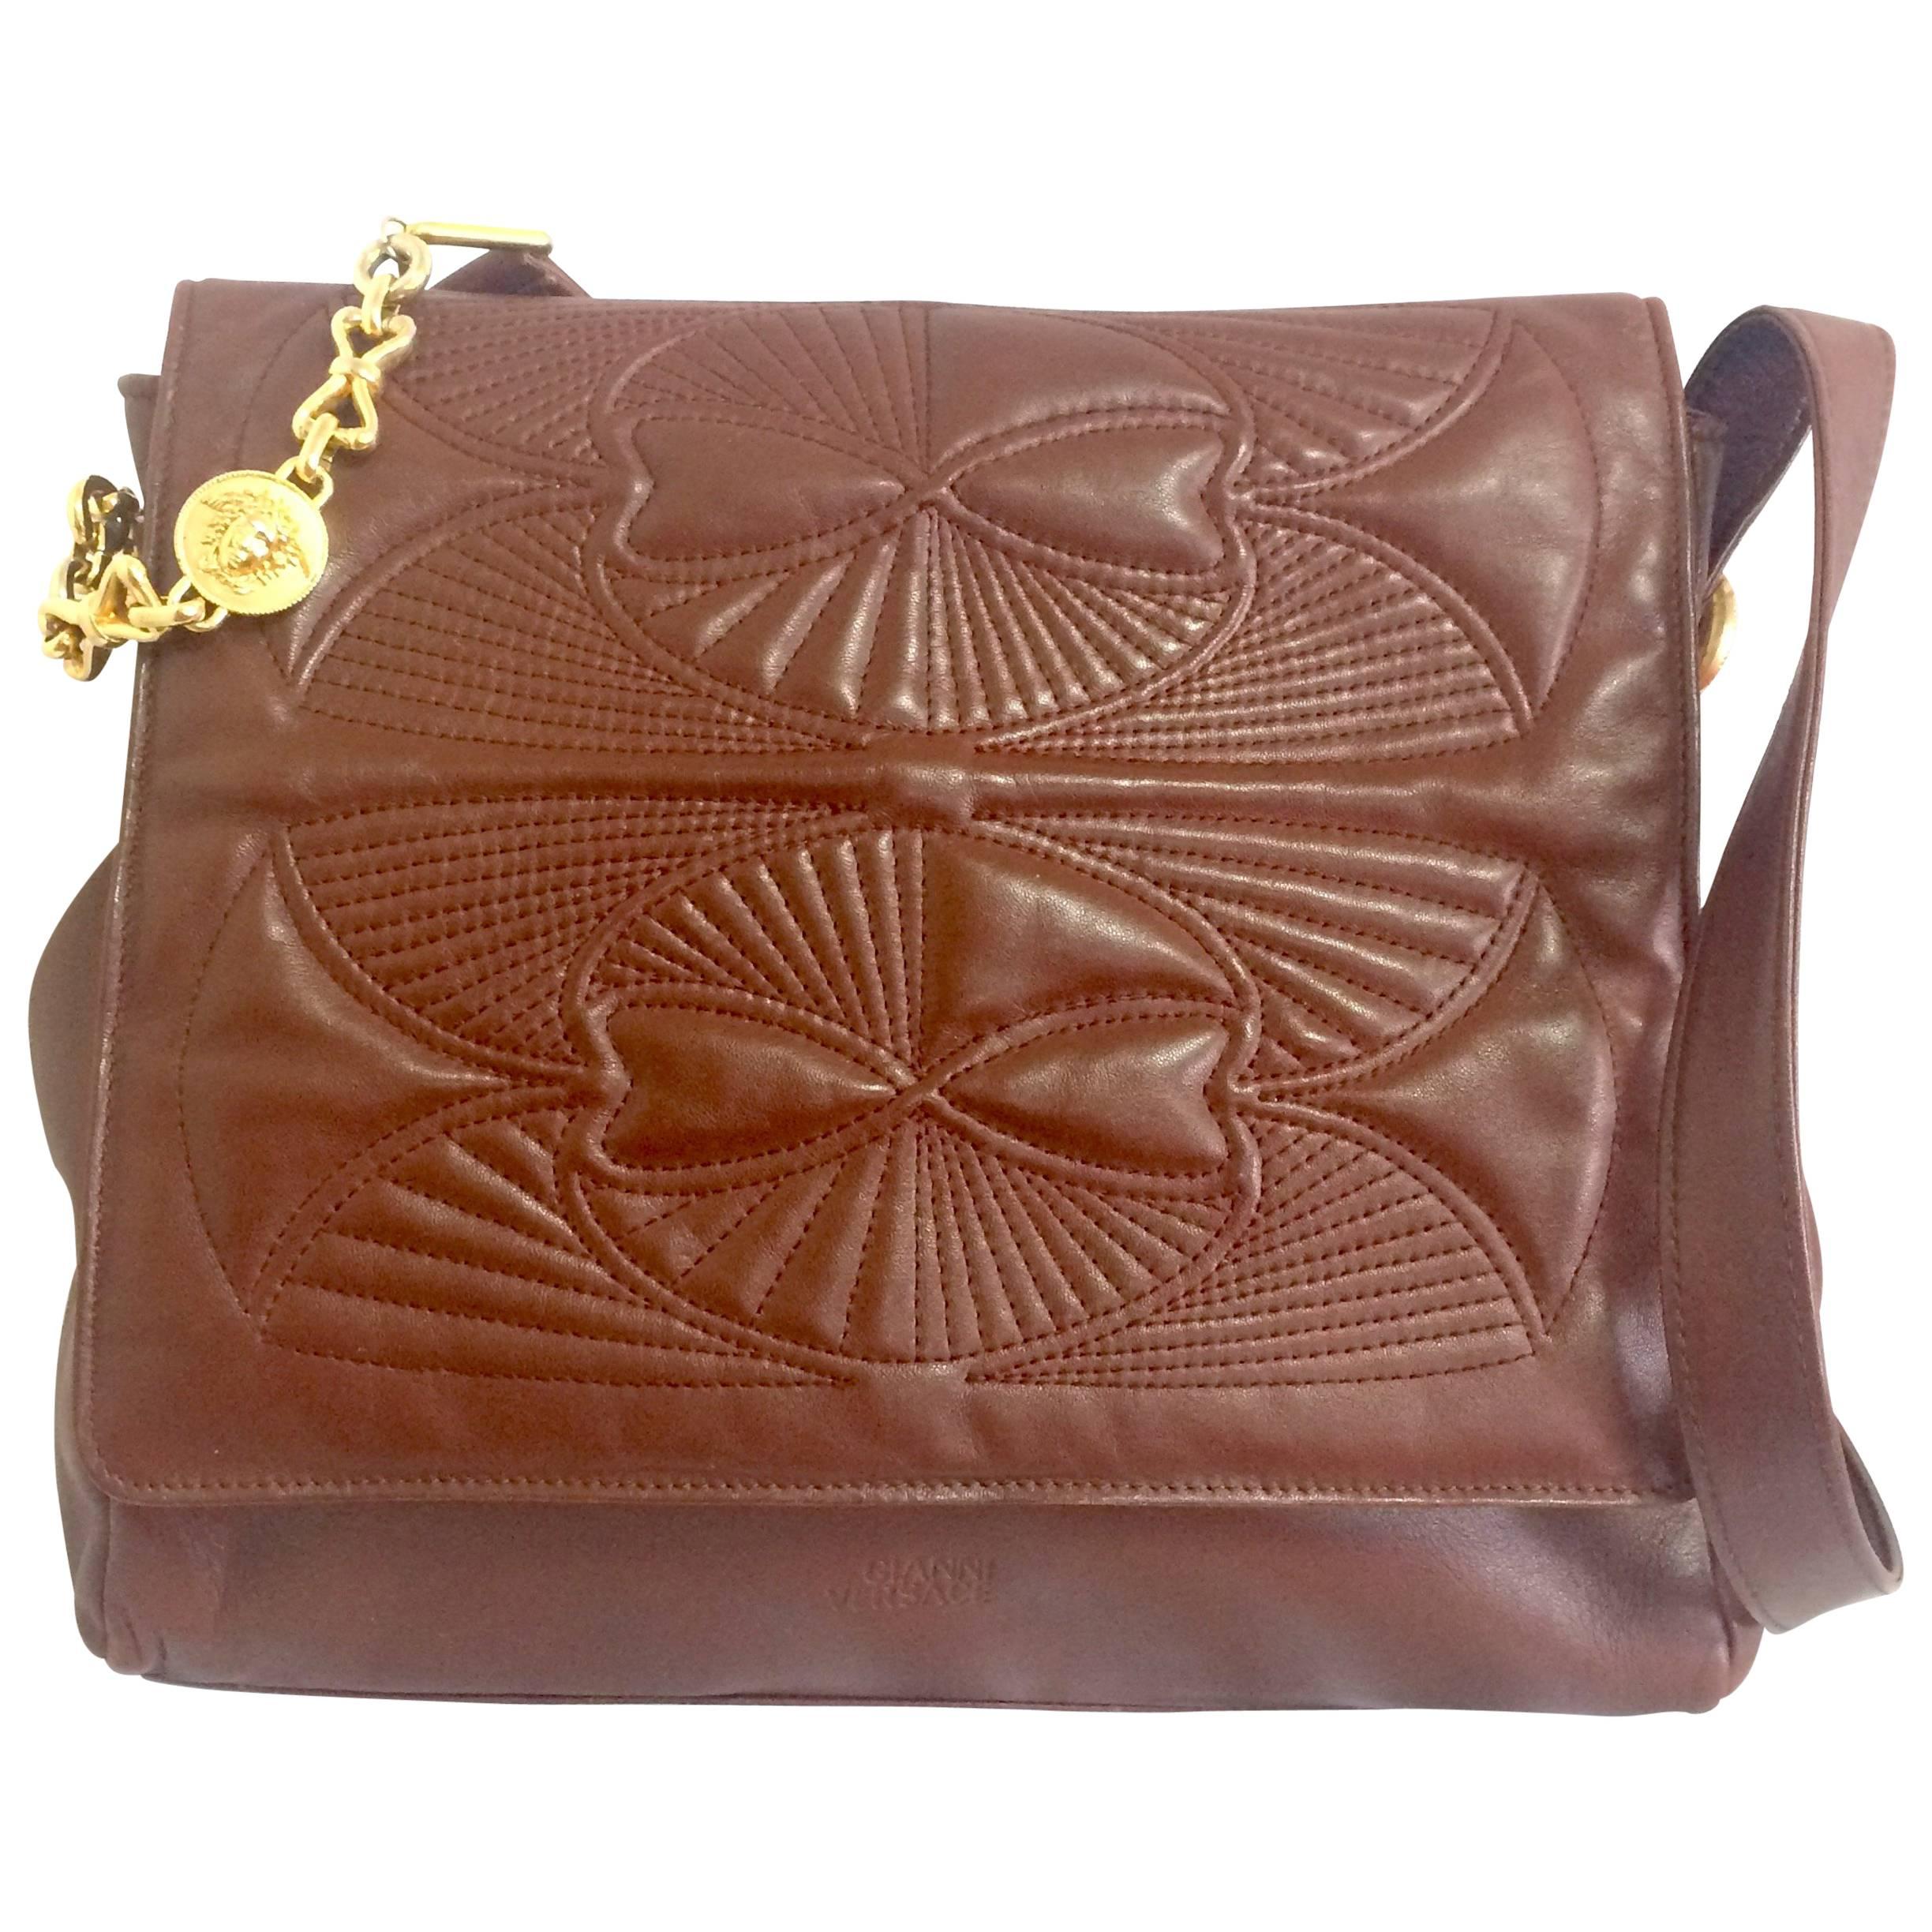  Vintage Gianni Versace brown messenger shoulder bag with golden medusa motifs. For Sale